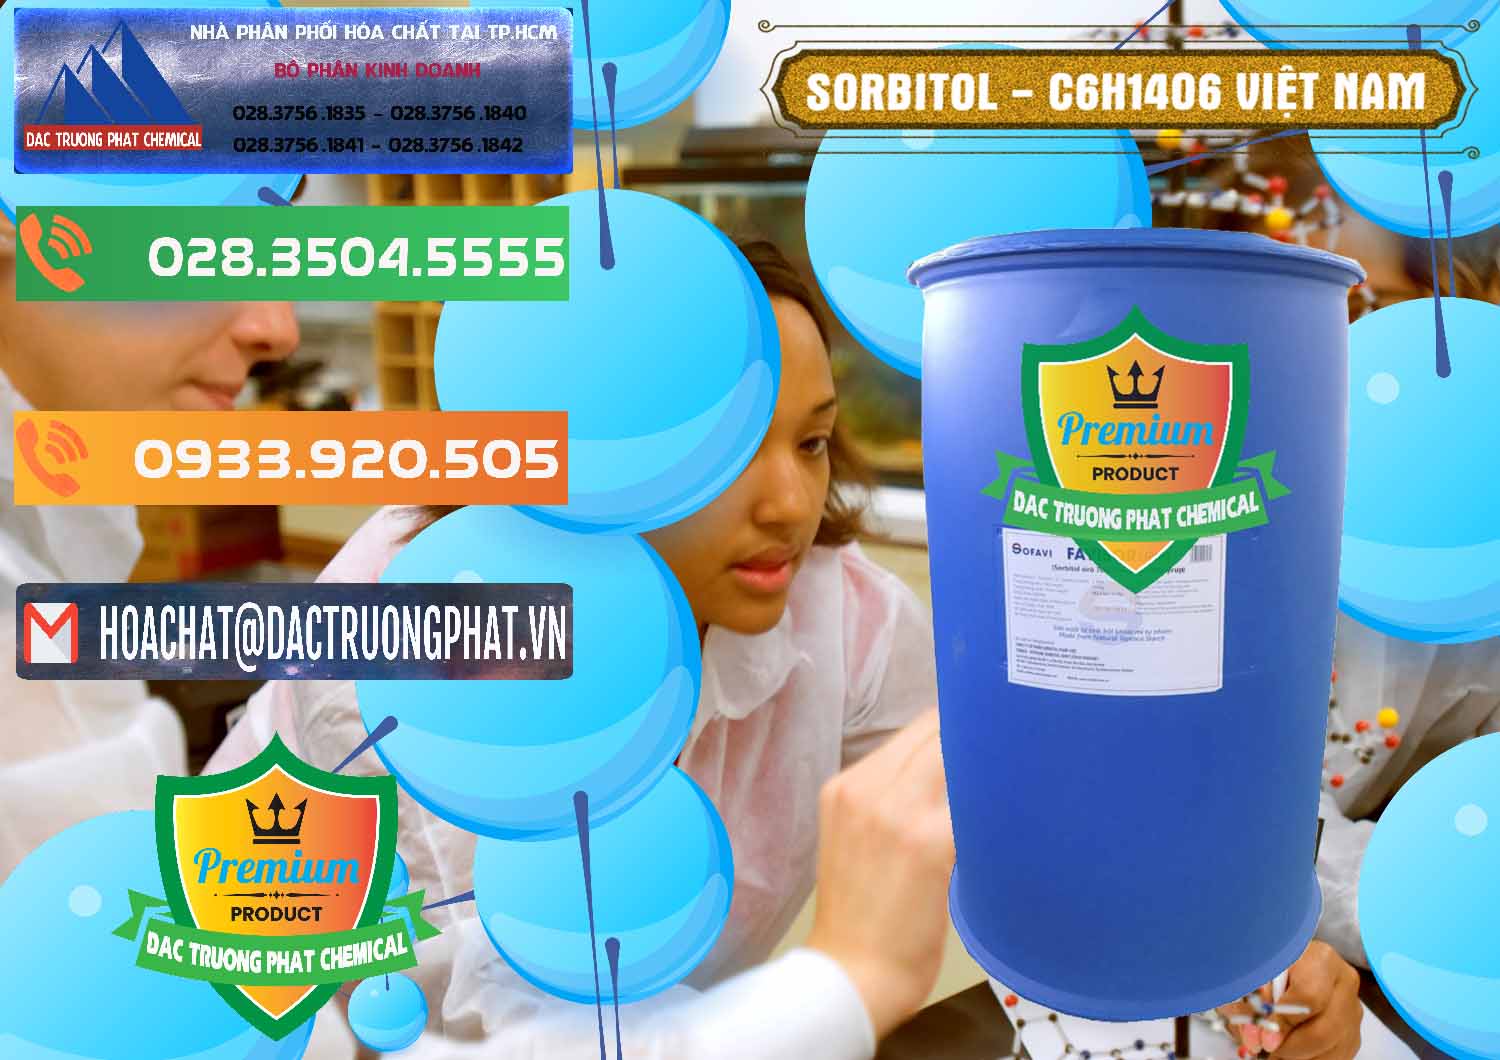 Đơn vị chuyên bán và cung cấp Sorbitol - C6H14O6 Lỏng 70% Food Grade Việt Nam - 0438 - Cty cung cấp - kinh doanh hóa chất tại TP.HCM - hoachatxulynuoc.com.vn